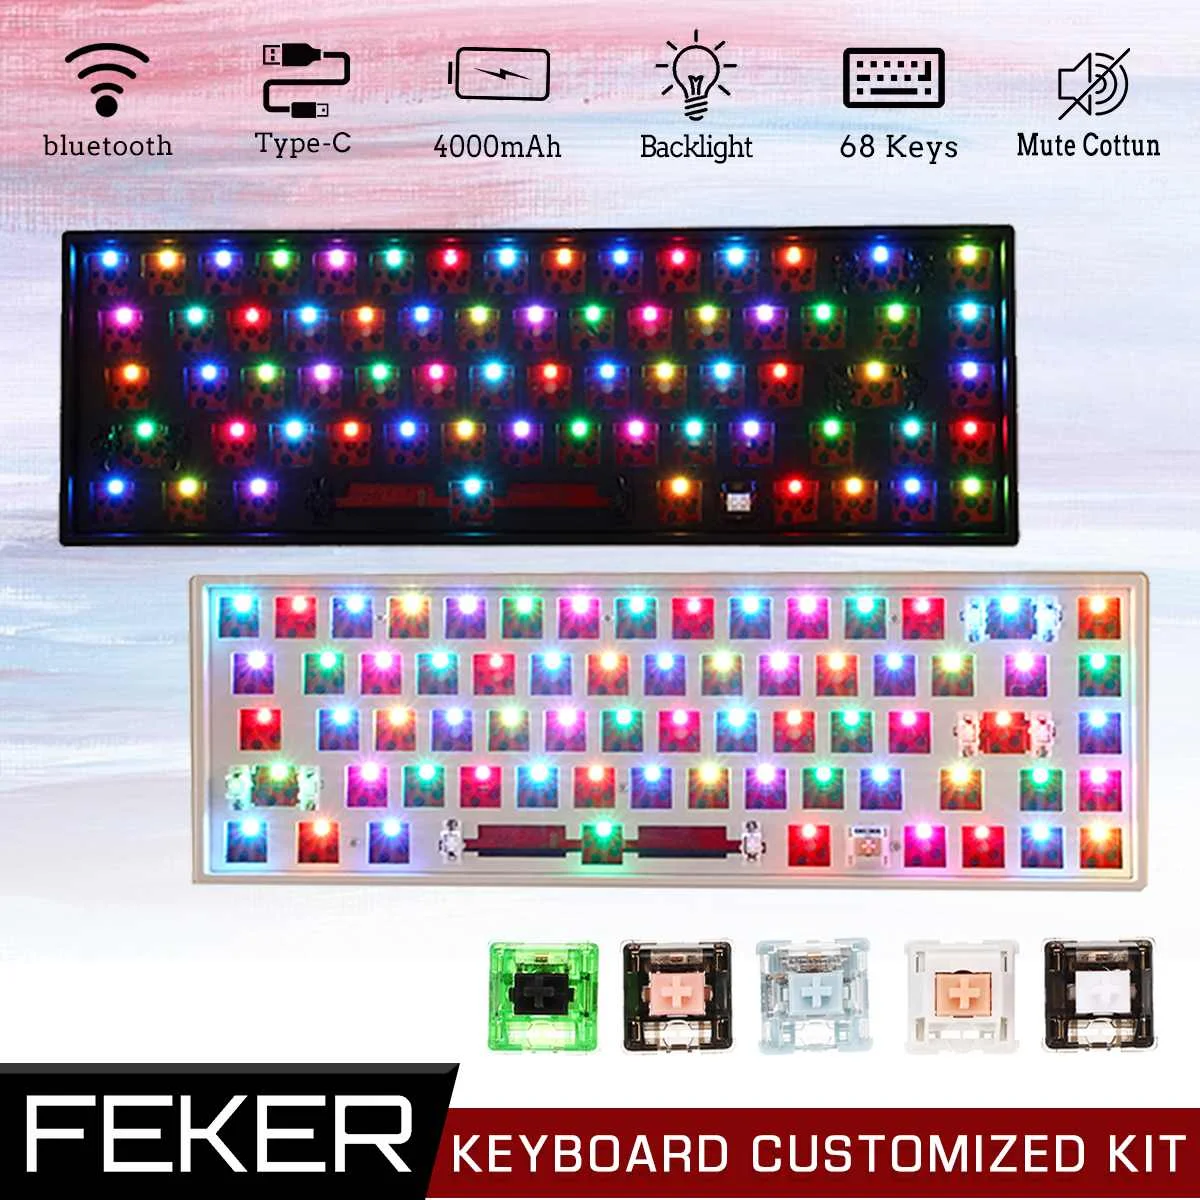 

FEKER 68 Keys Hotswap DIY Keyboard Customized Kit Triple Mode bluetooth 2.4Ghz NKRO Backlit Mute Cotton Mechanical Keyboard Kit